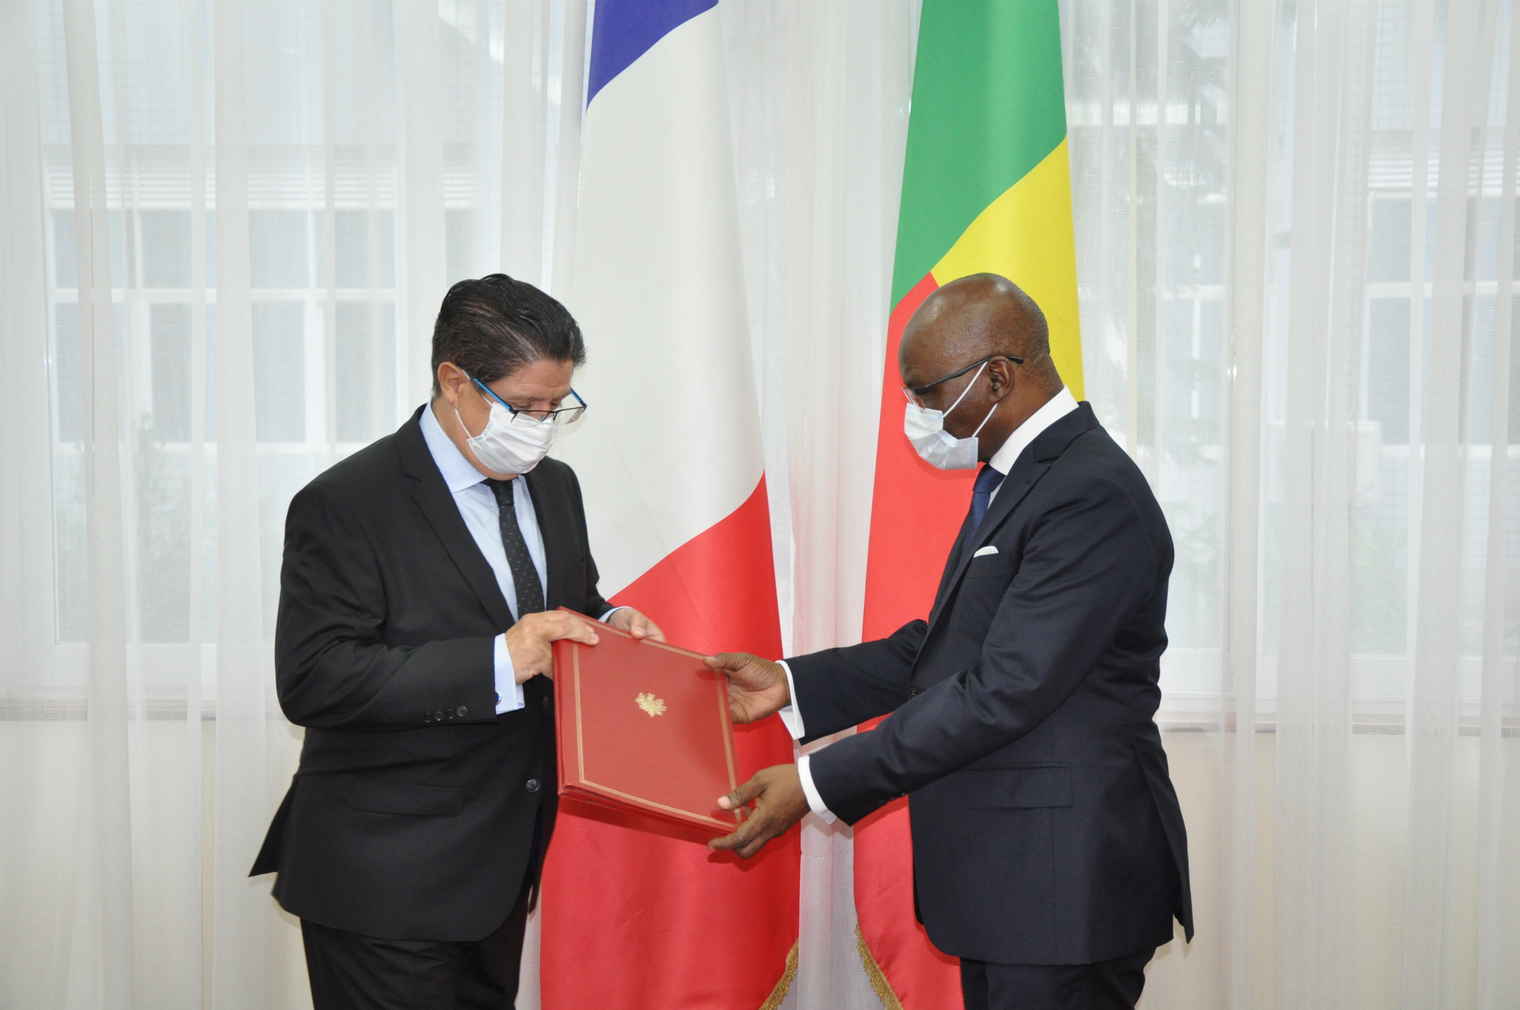 Le ministre AGBENONCI reçoit M. Marc VIZY, Ambassadeur agréé de la République française près le Bénin